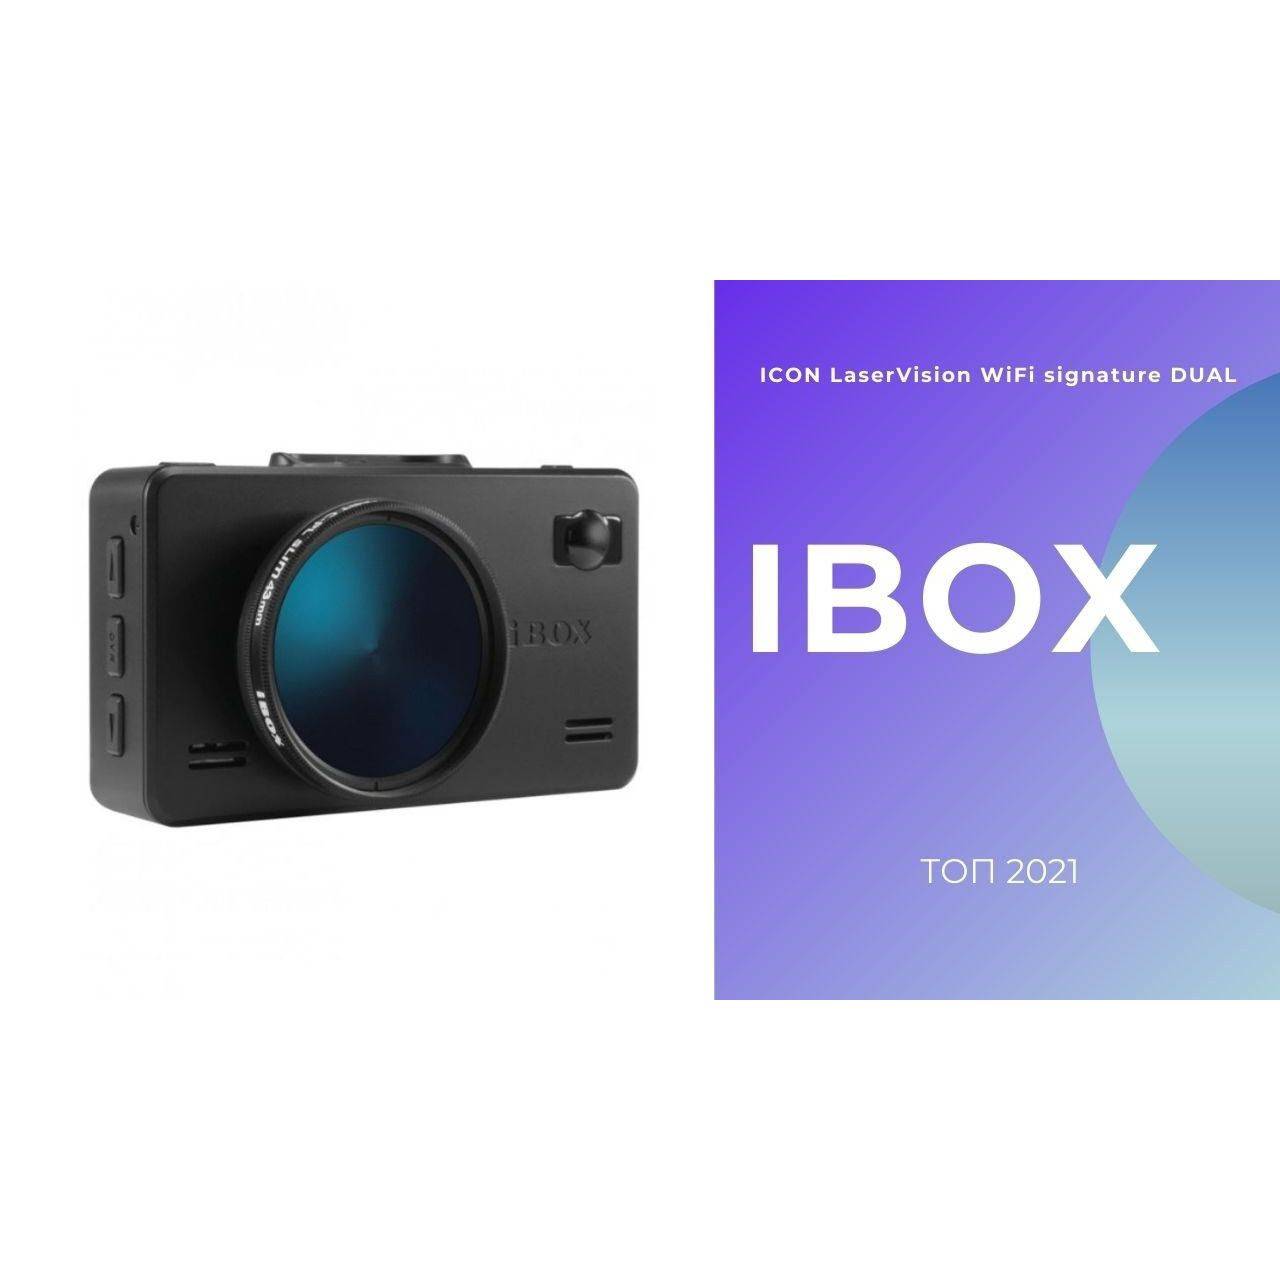 Видеорегистратор ibox icon. IBOX icon Laser Vision WIFI Signature Dual. IBOX range laservision WIFI Signature Dual. IBOX icon laservision. Видеорегистратор IBOX icone laservision.